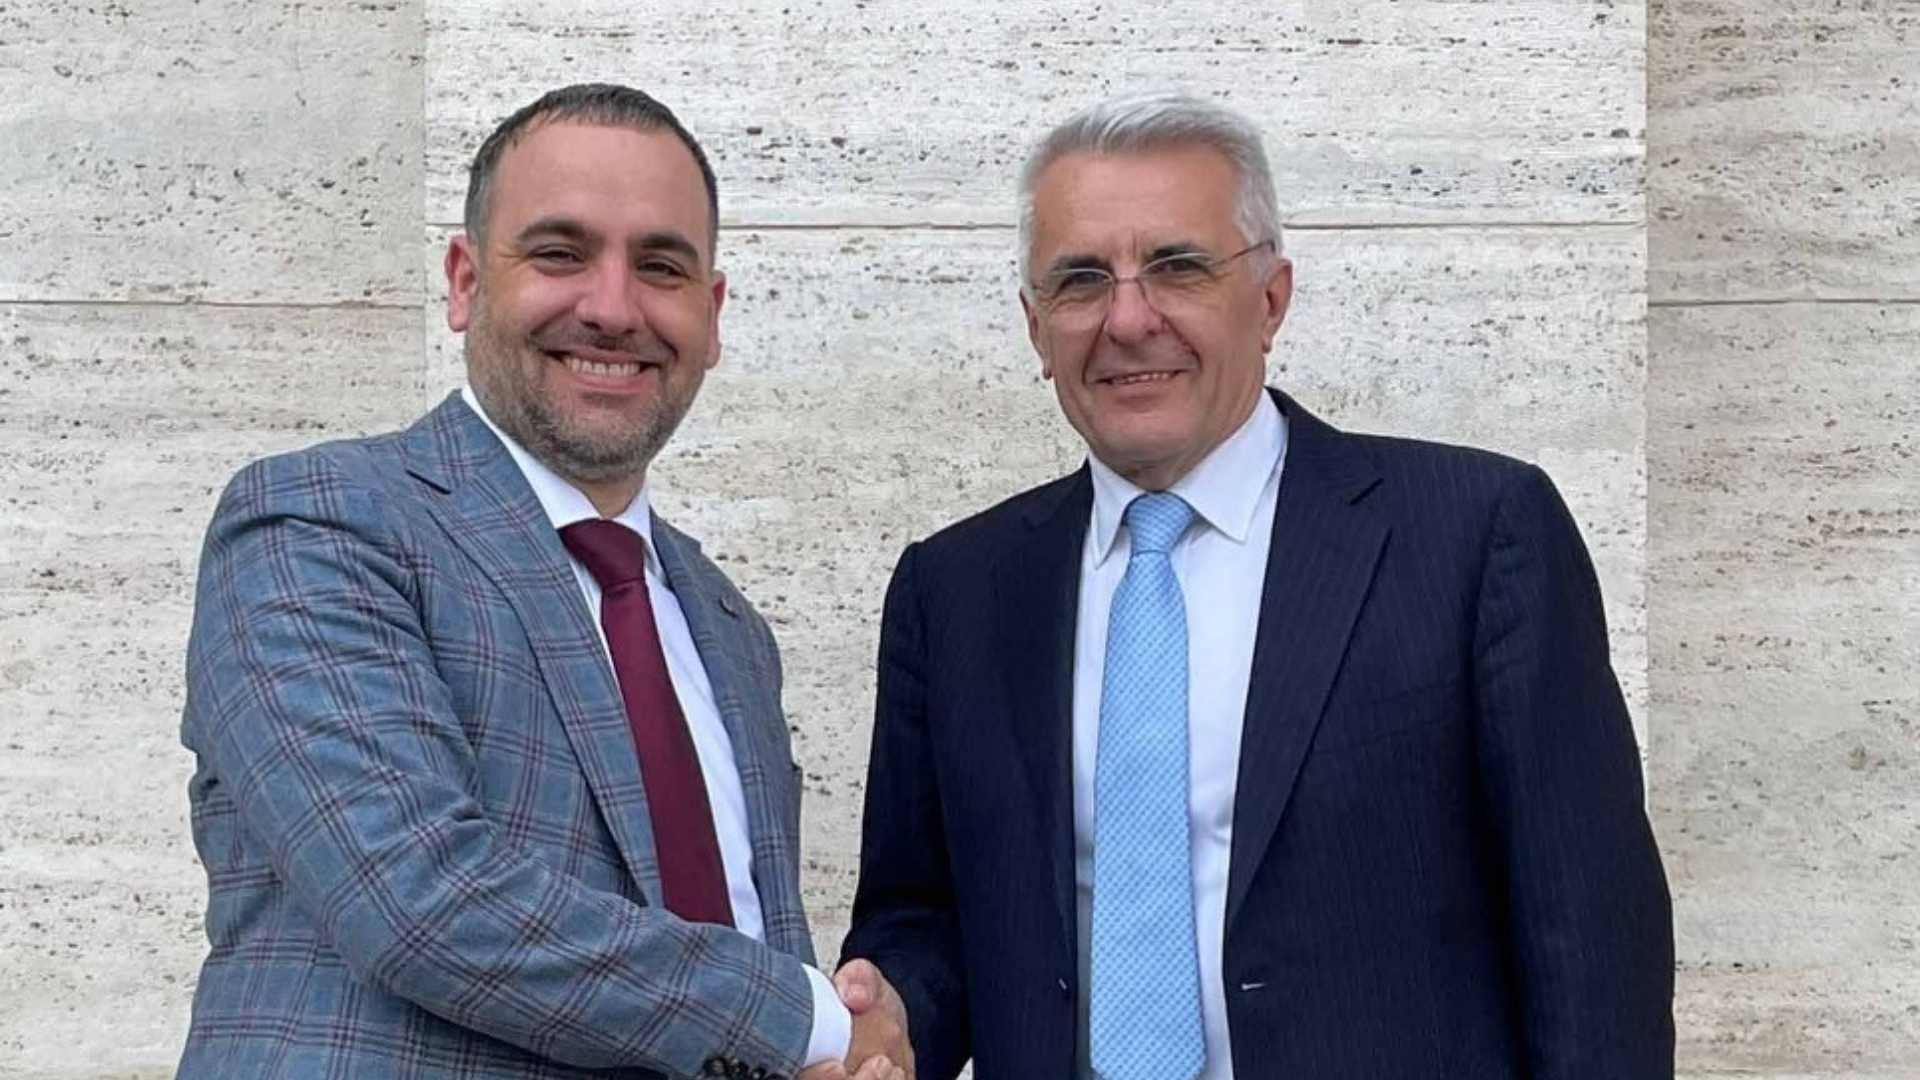 Alessandro Peron Segretario generale FIAP e Giovanni Collino Amministratore Delegato DRIVEvolve v2